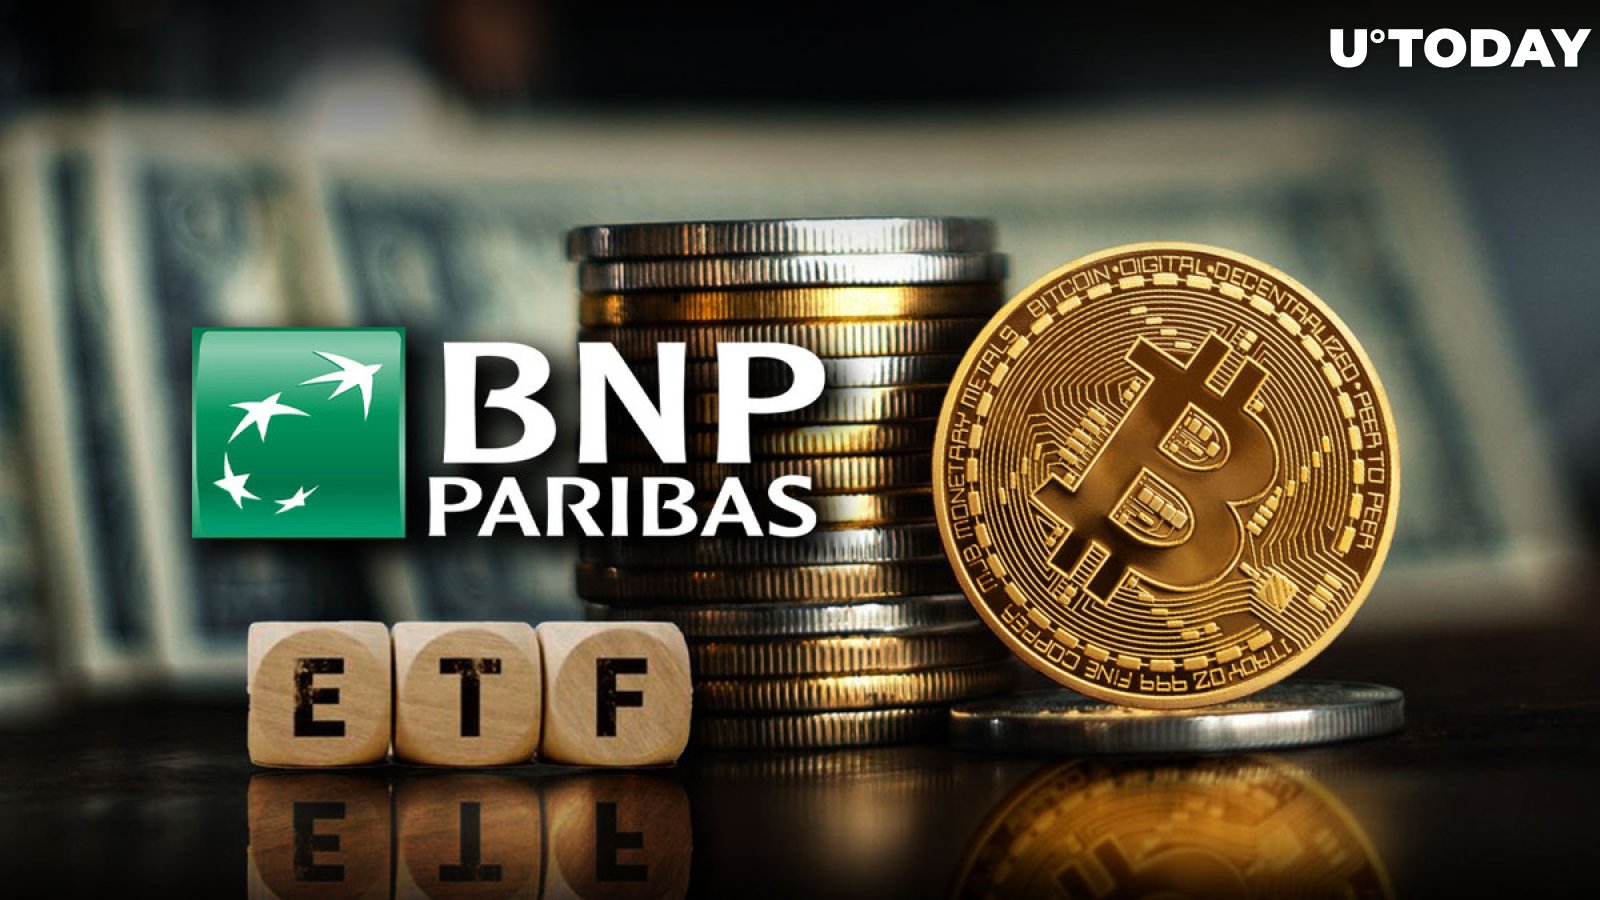 European banking giant BNP Paribas joins the Bitcoin ETF bandwagon